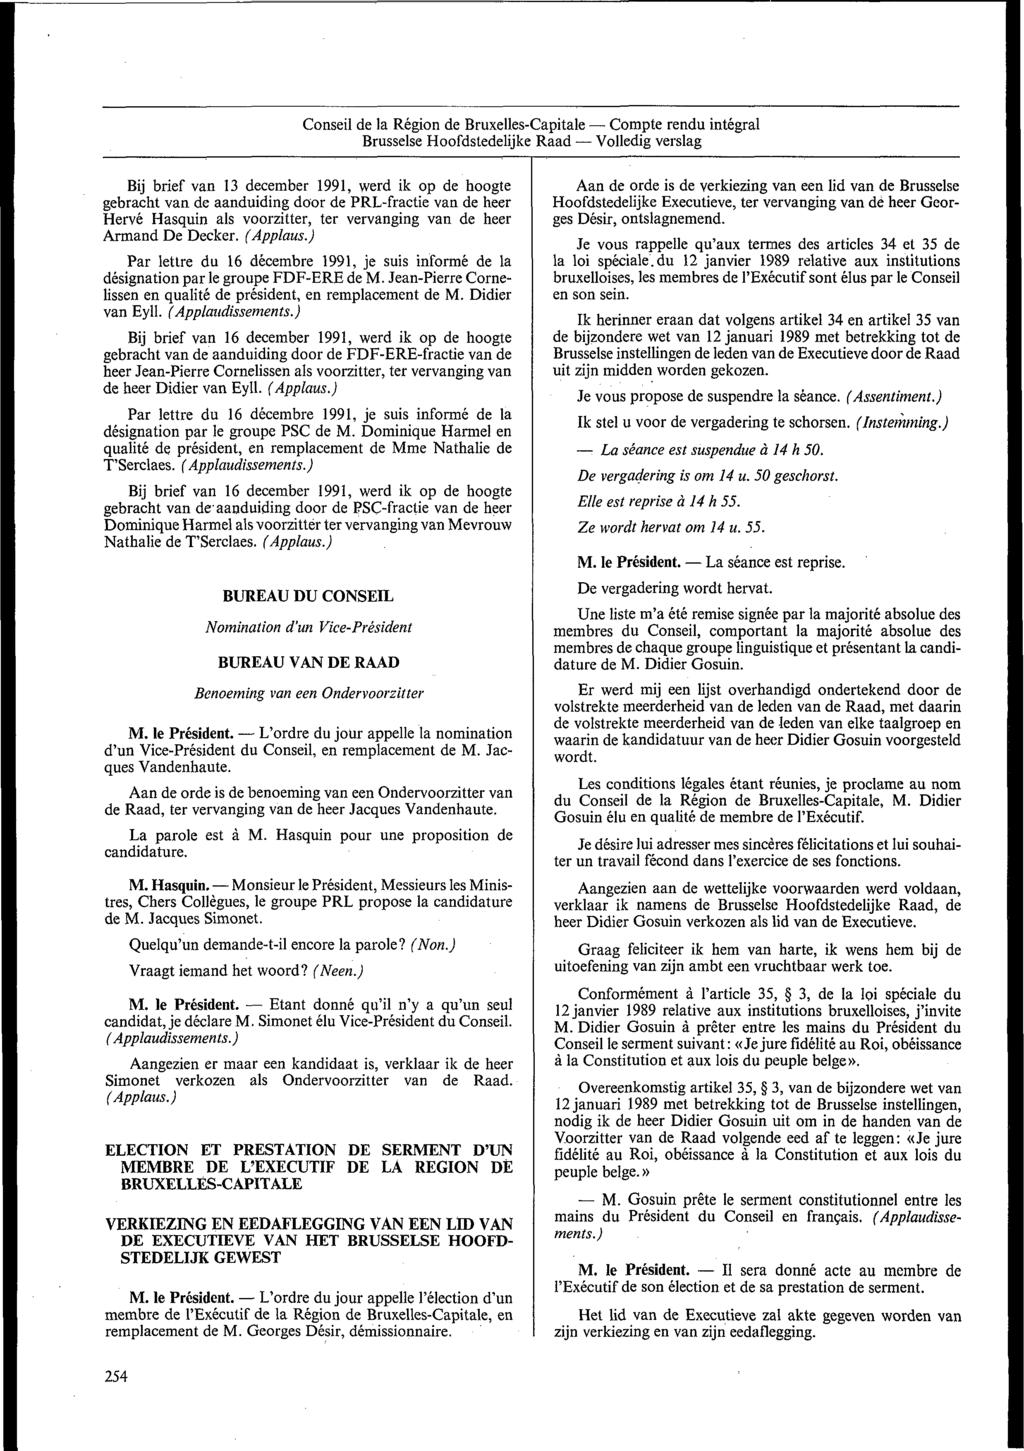 Conseil de la Region de Bruxelles-Capitale Compte rendu integral Brusselse Hoofdstedelijke Raad Volledig verslag Bij brief van 13 december 1991, werd ik op de hoogte gebracht van de aanduiding door